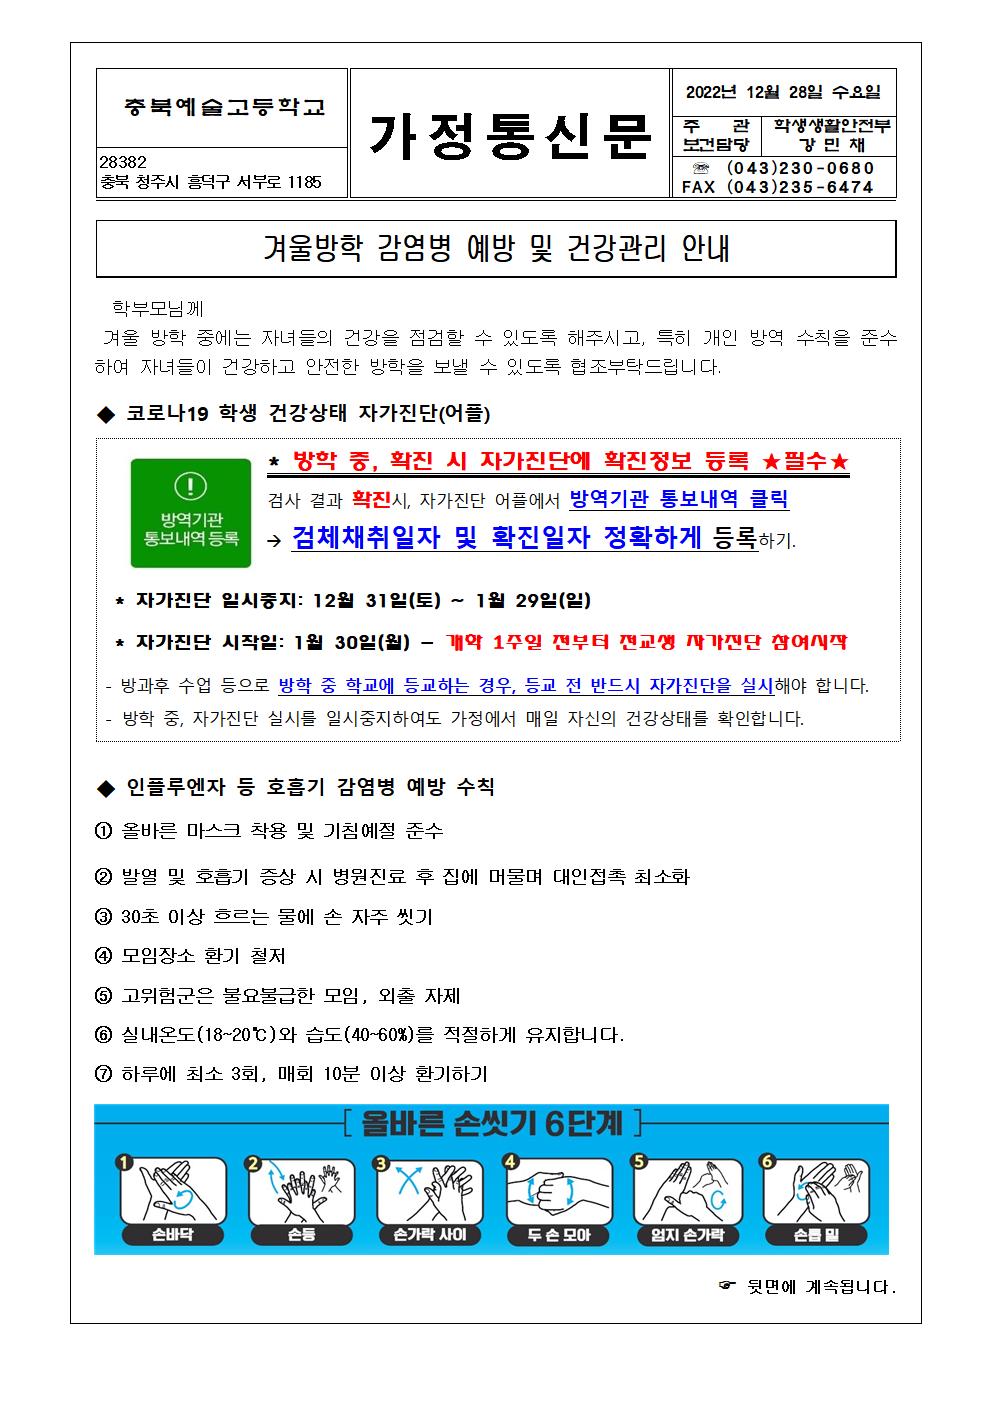 가정통신문-겨울방학 감염병 예방 및 건강관리 안내(이미지파일)